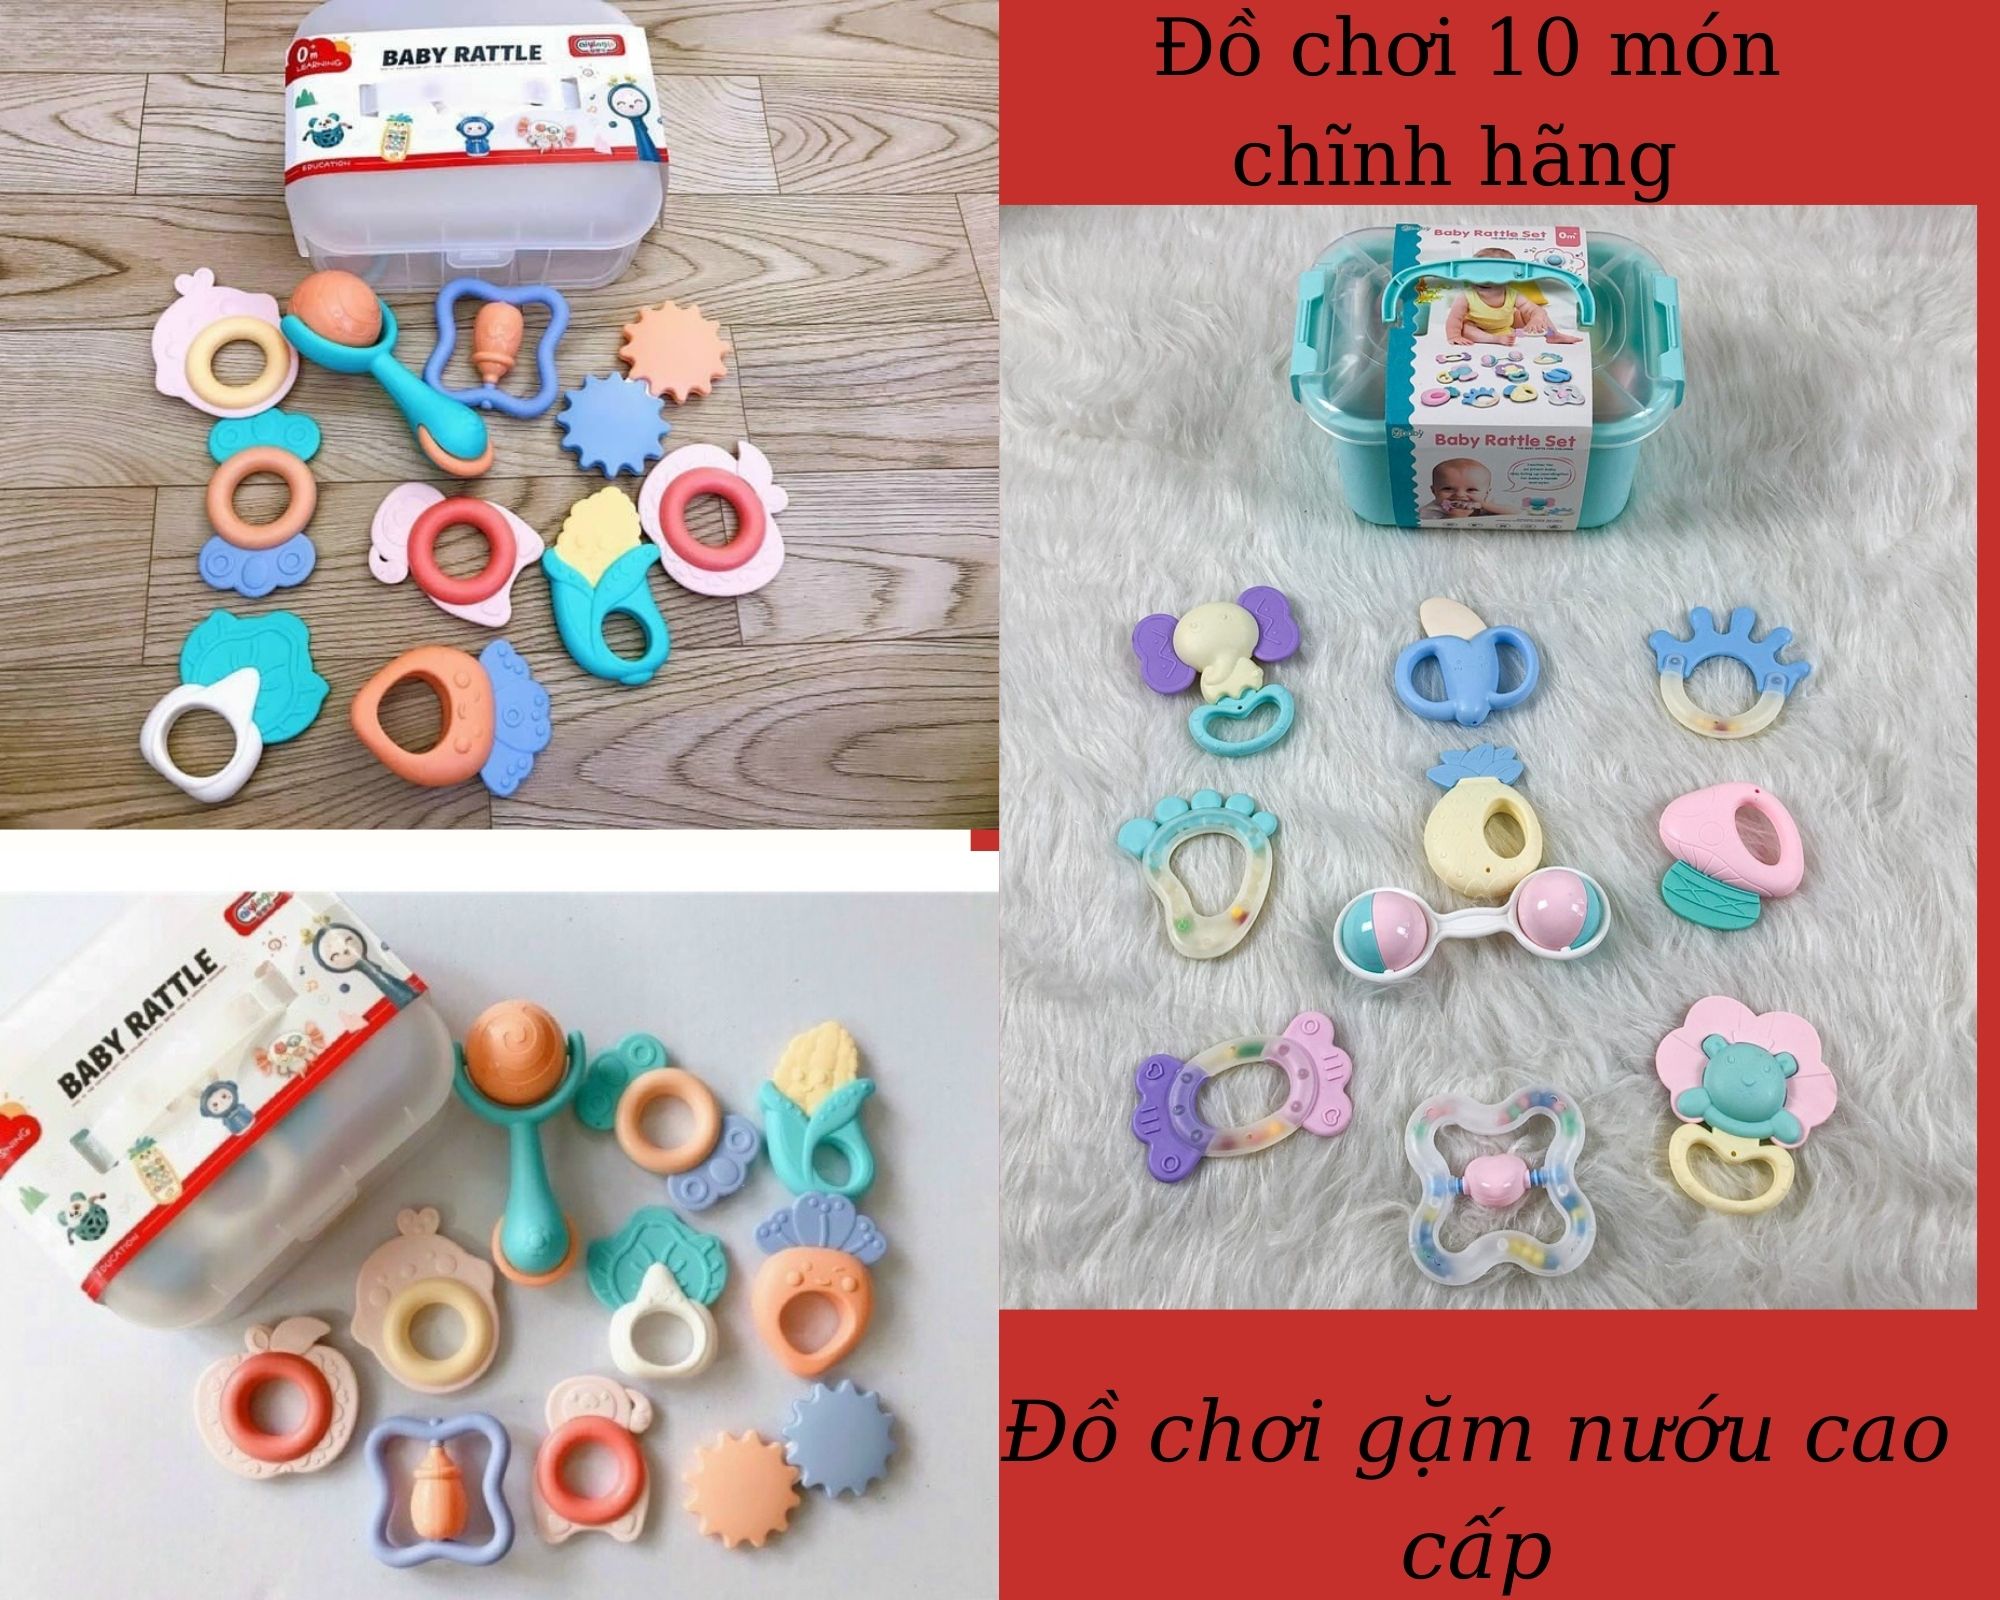 Bộ đồ chơi 10 món gặm nướu xúc xắc lục lạc nhiều màu sắc cho bé.Bộ đồ chơi